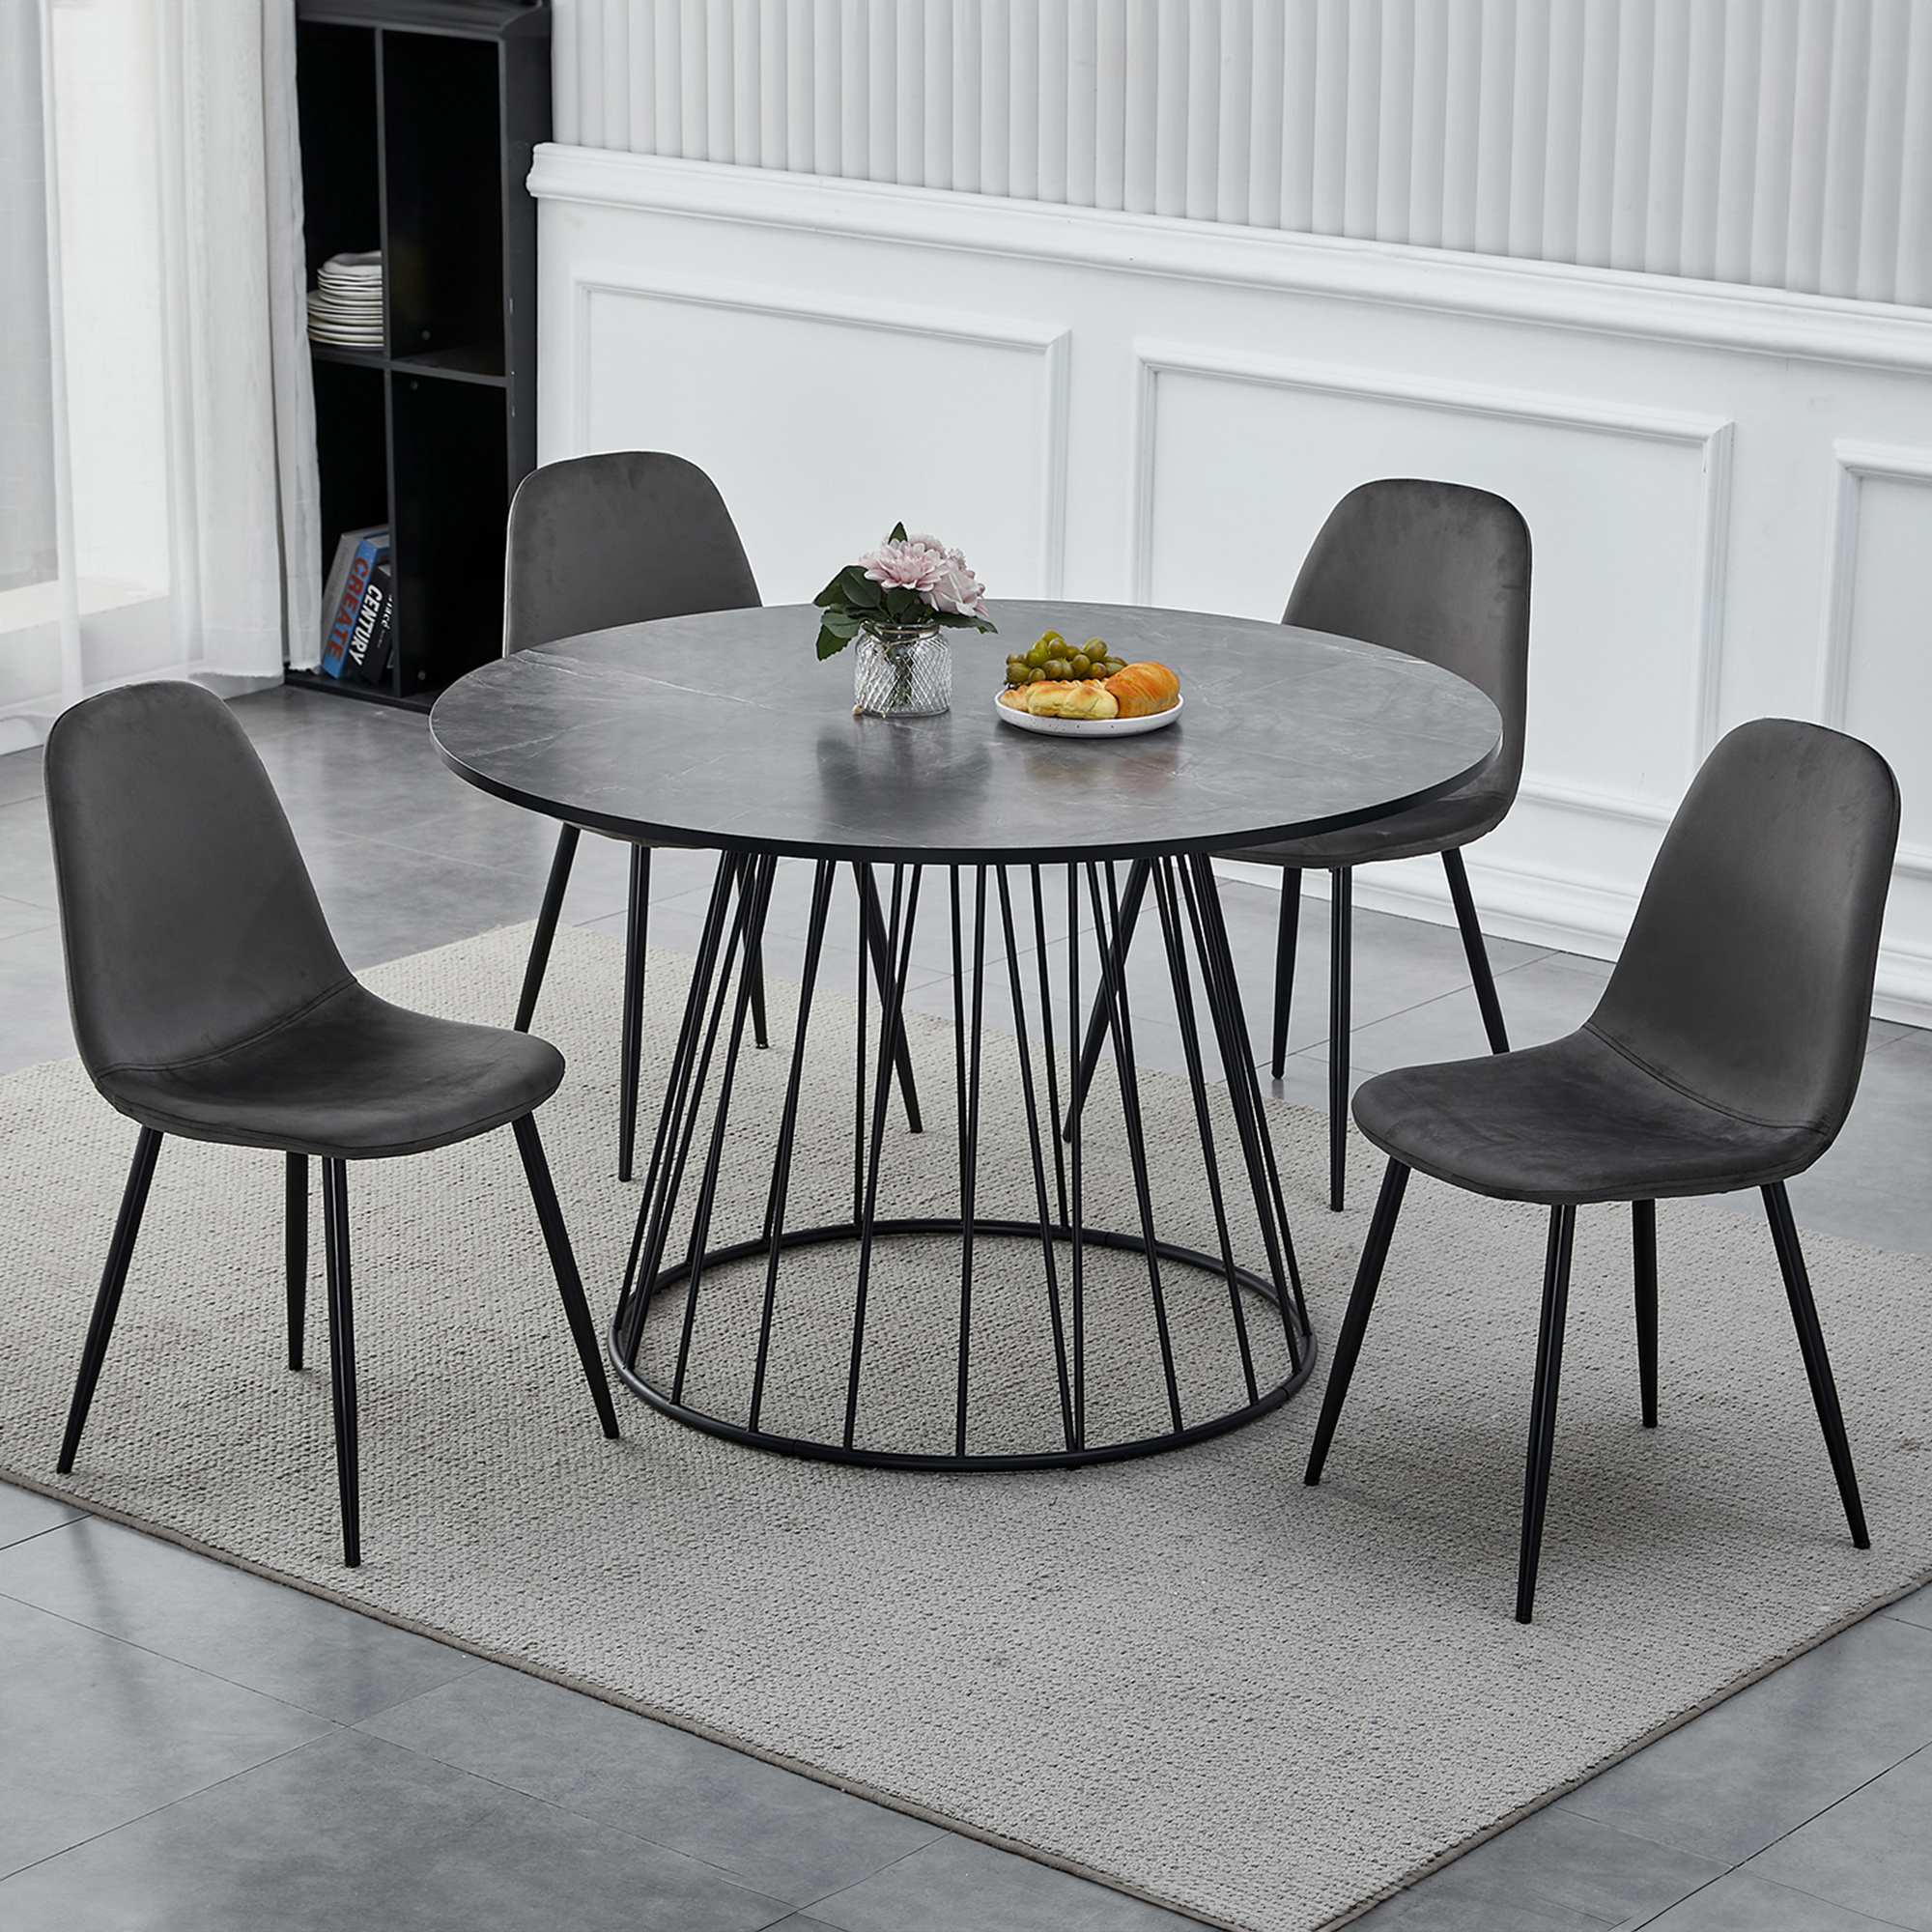 Table à manger ronde effet marbre gris pied central design métal noir